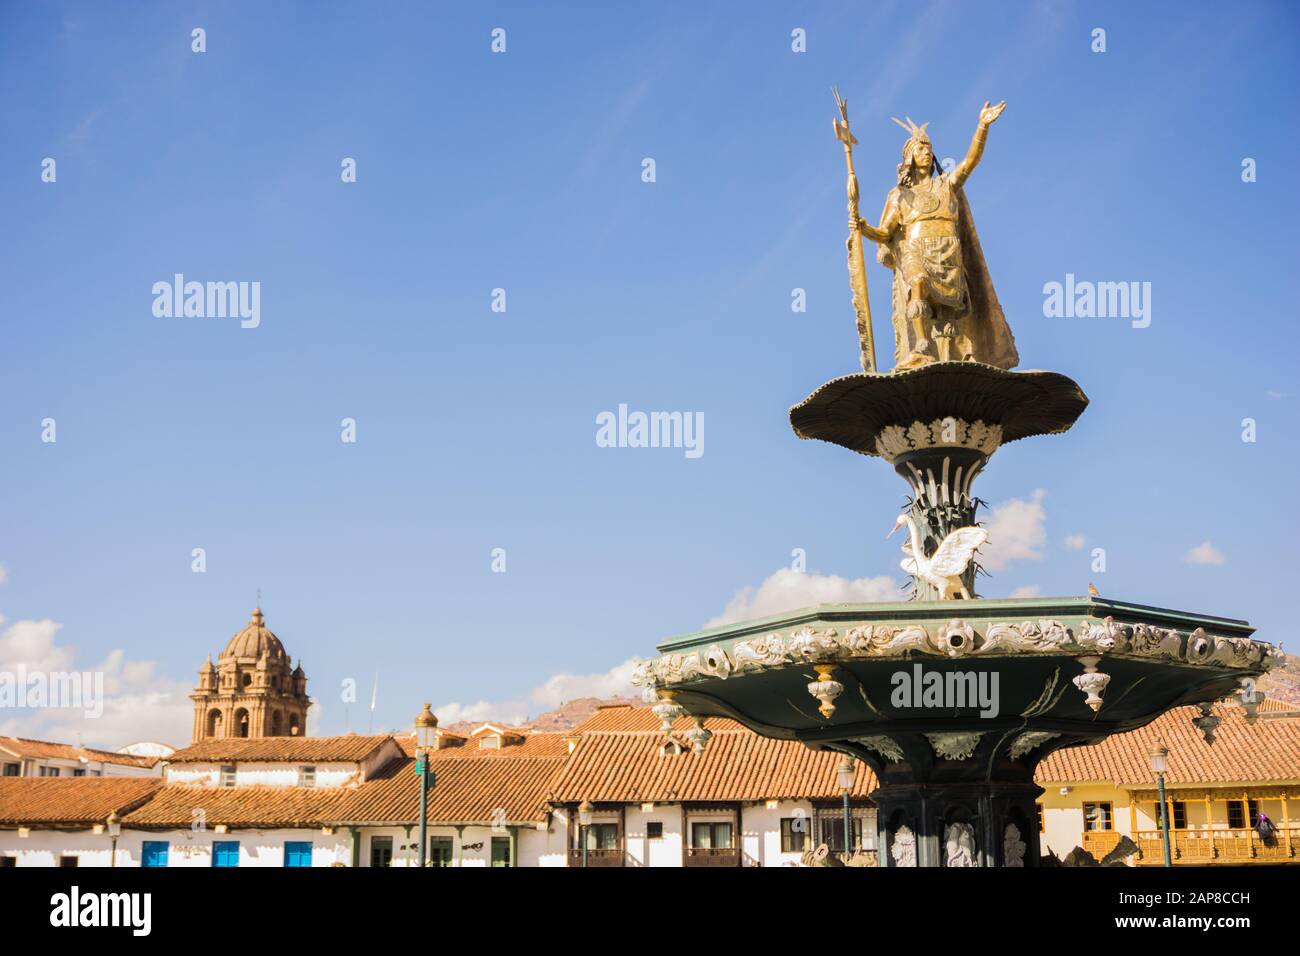 City of Cusco in the main square of Cusco in Peru Stock Photo